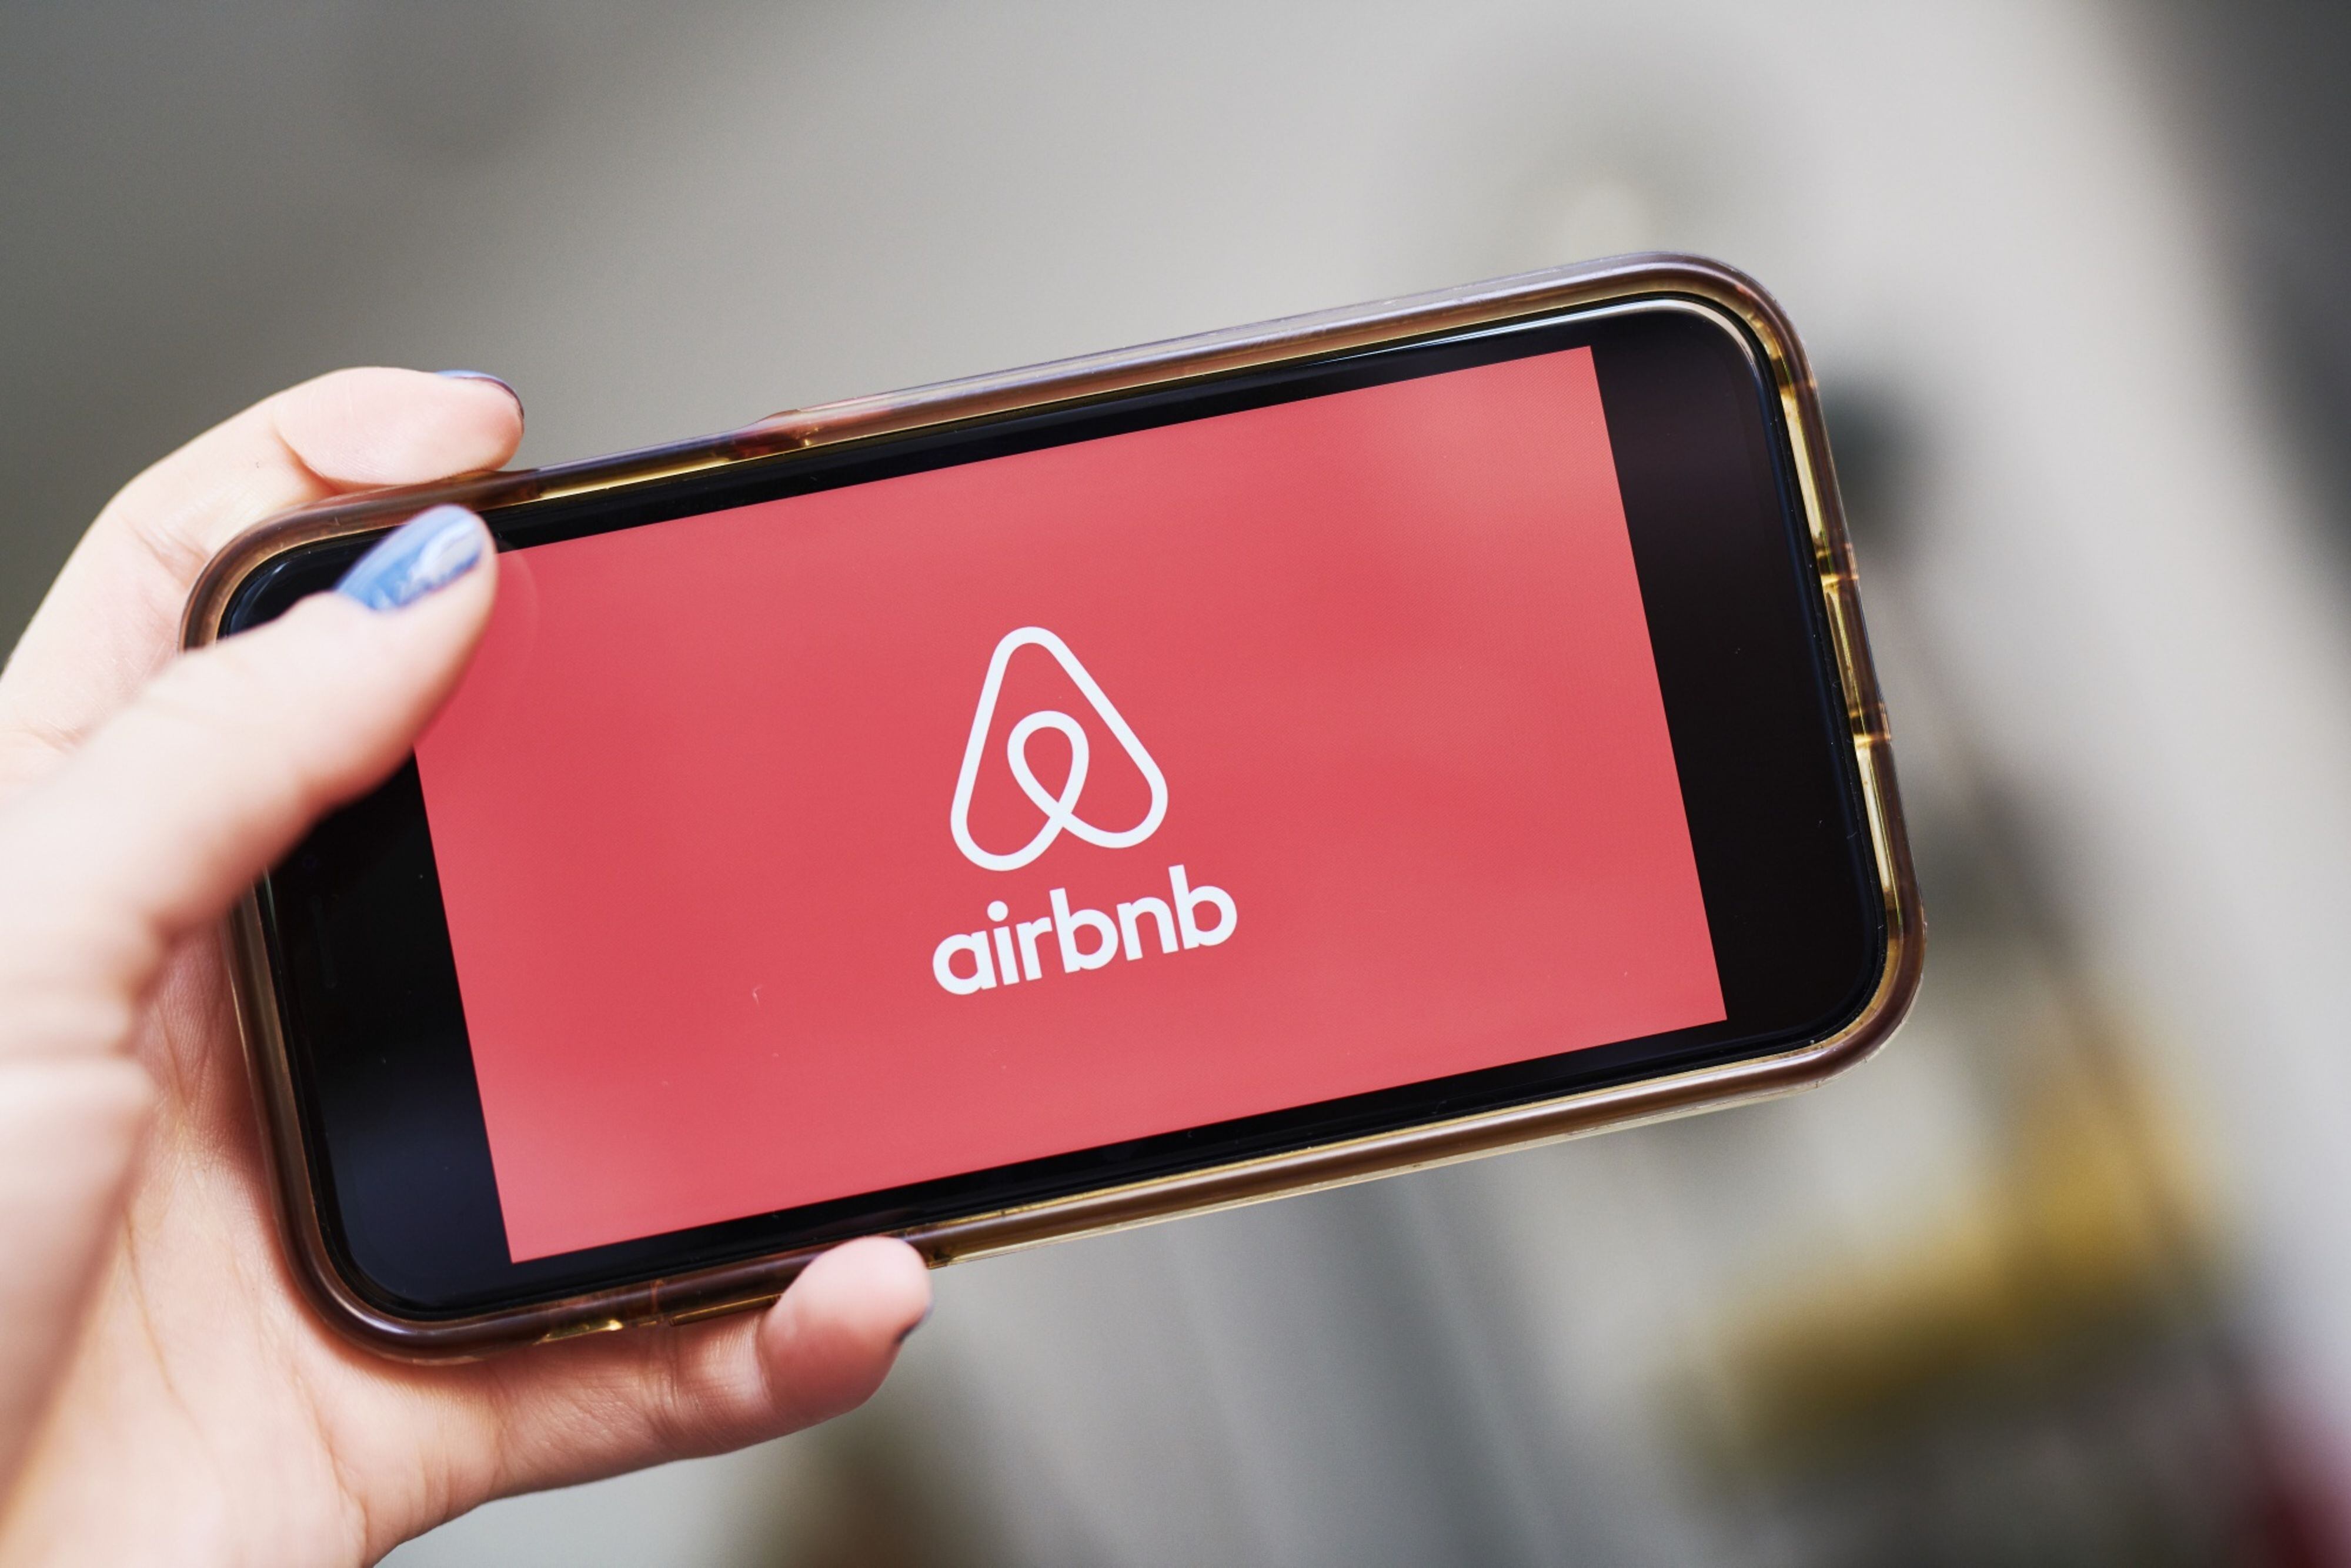 Muerte de estadounidenses en Airbnb: ‘Nuestra prioridad es apoyar a afectados’ dice la empresa